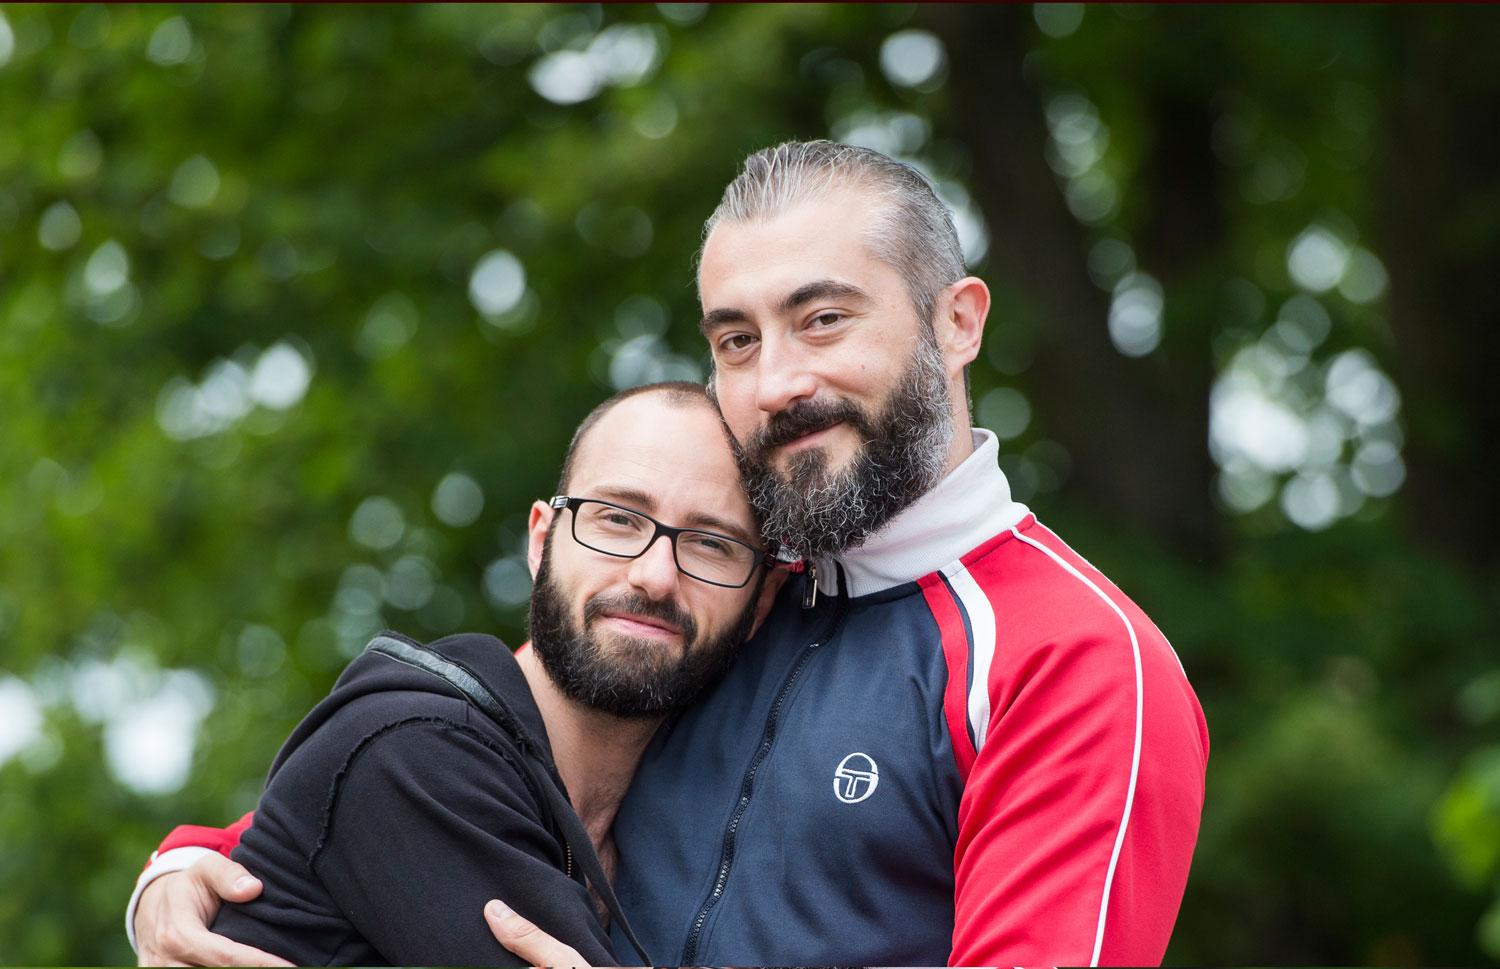 Paret Francesco och Diego ska gifta sig mitt i prideparaden på lördag.